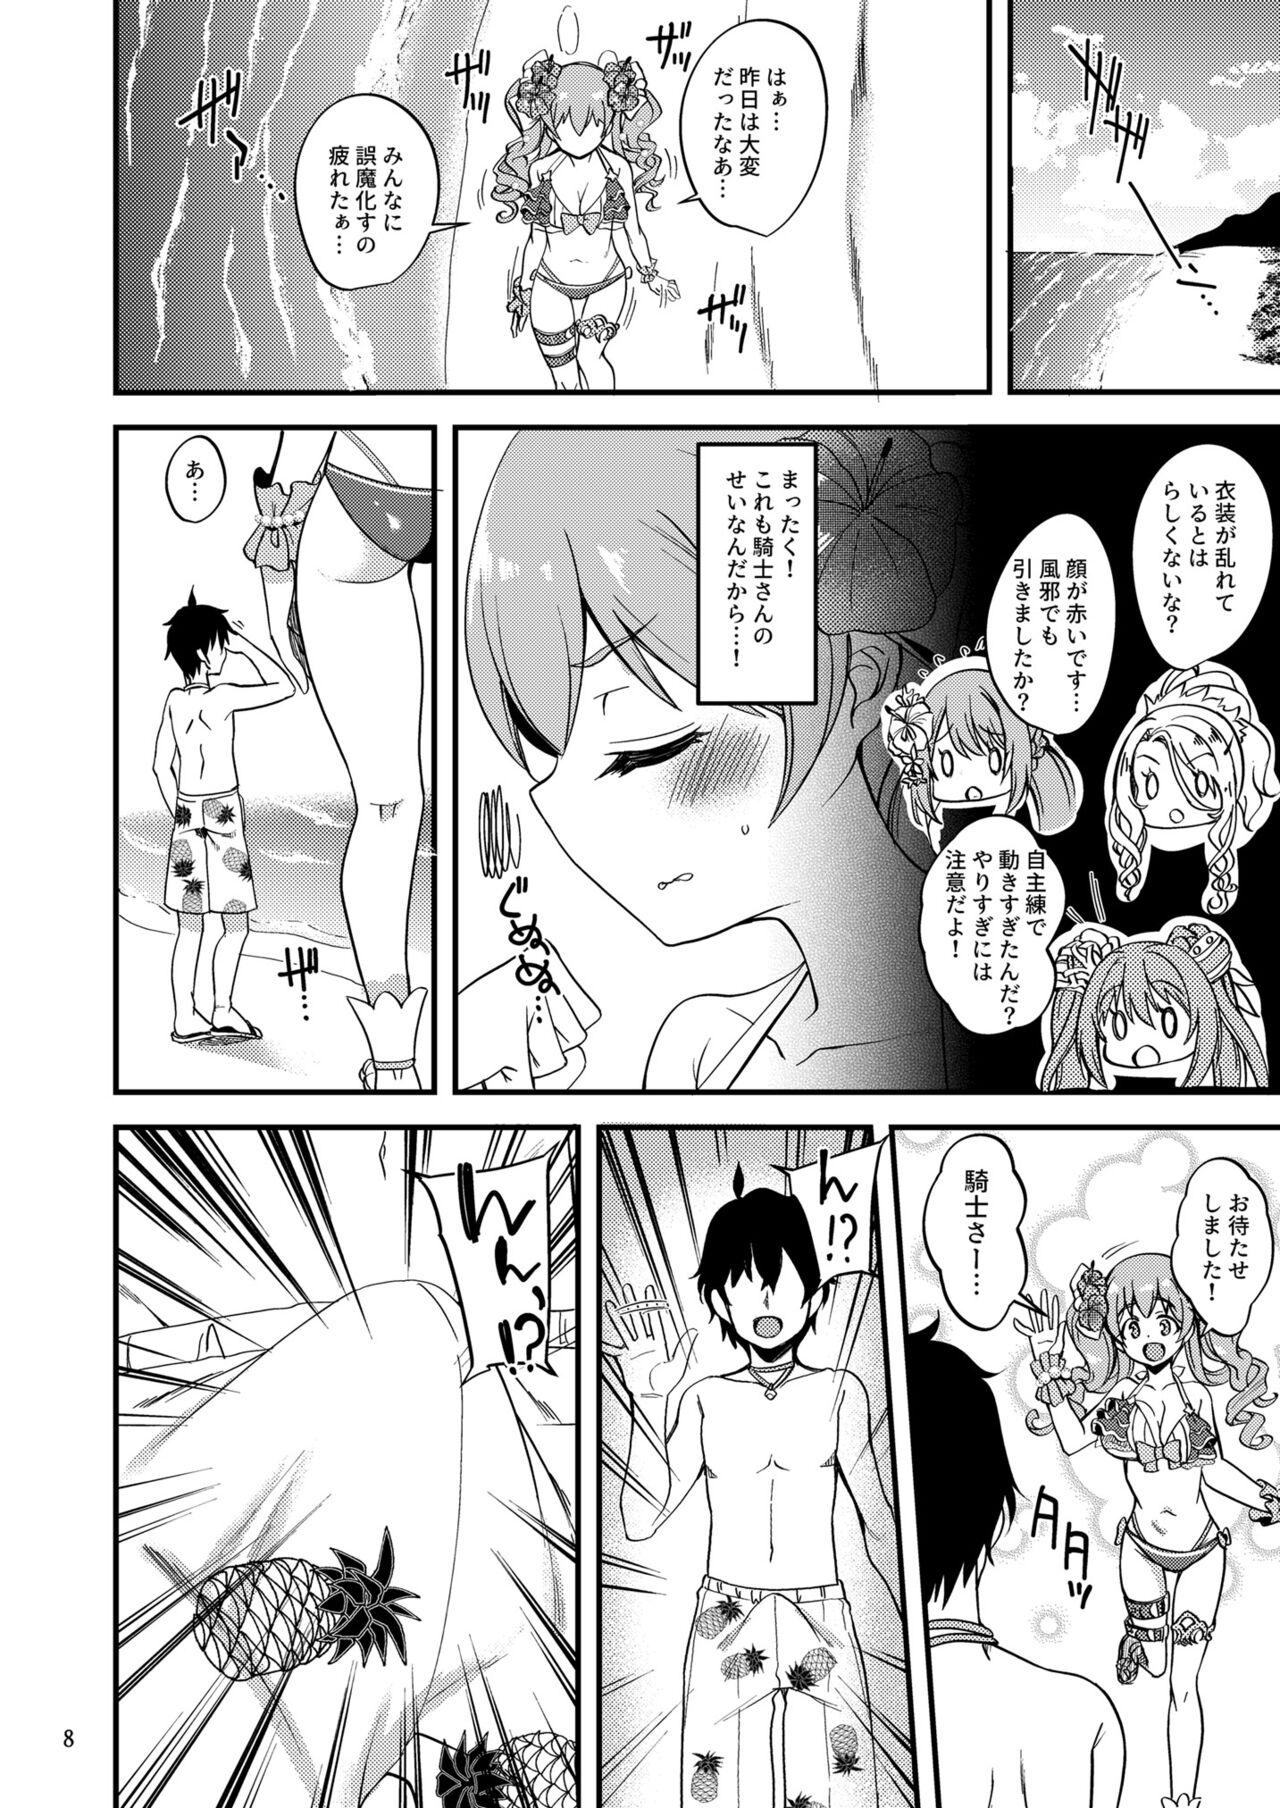 Bulge Tsumugi Make Heroine Move!! 07 - Princess connect Natural Boobs - Page 7